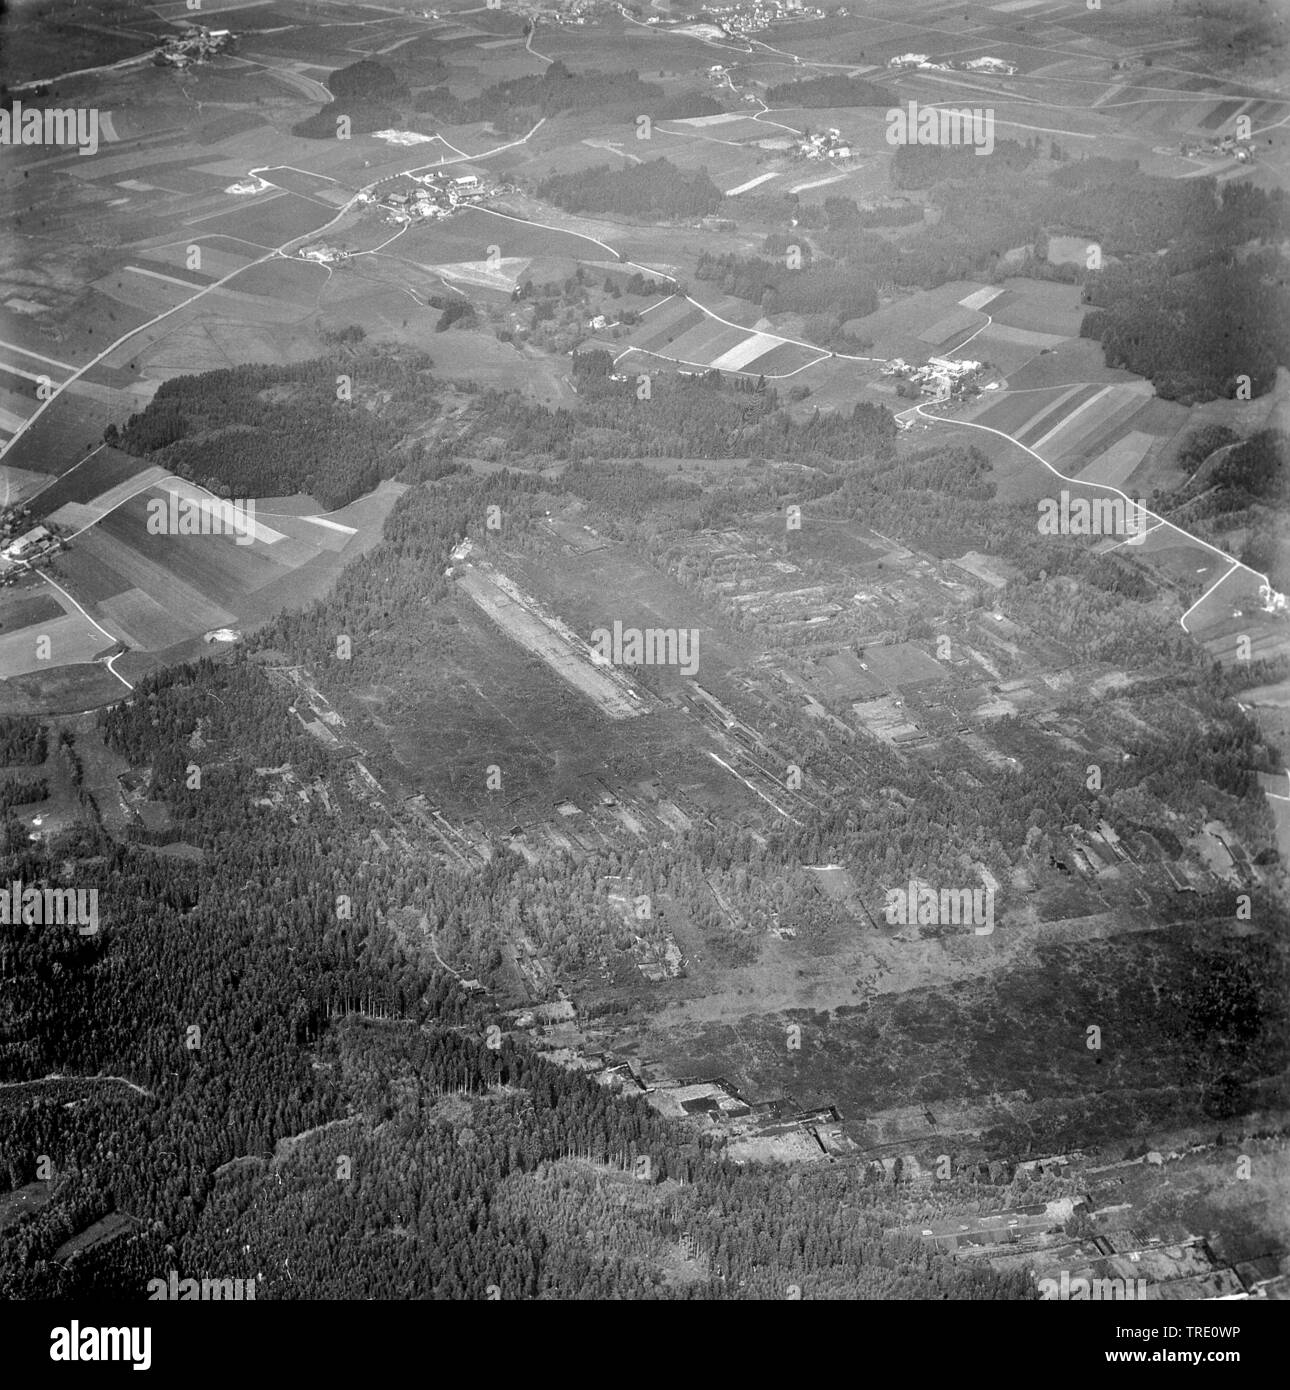 Paesaggio palustre al luogo sconosciuto, storico foto aerea a partire dall'estate 1965, in Germania, in Baviera, Franken, Franconia Foto Stock